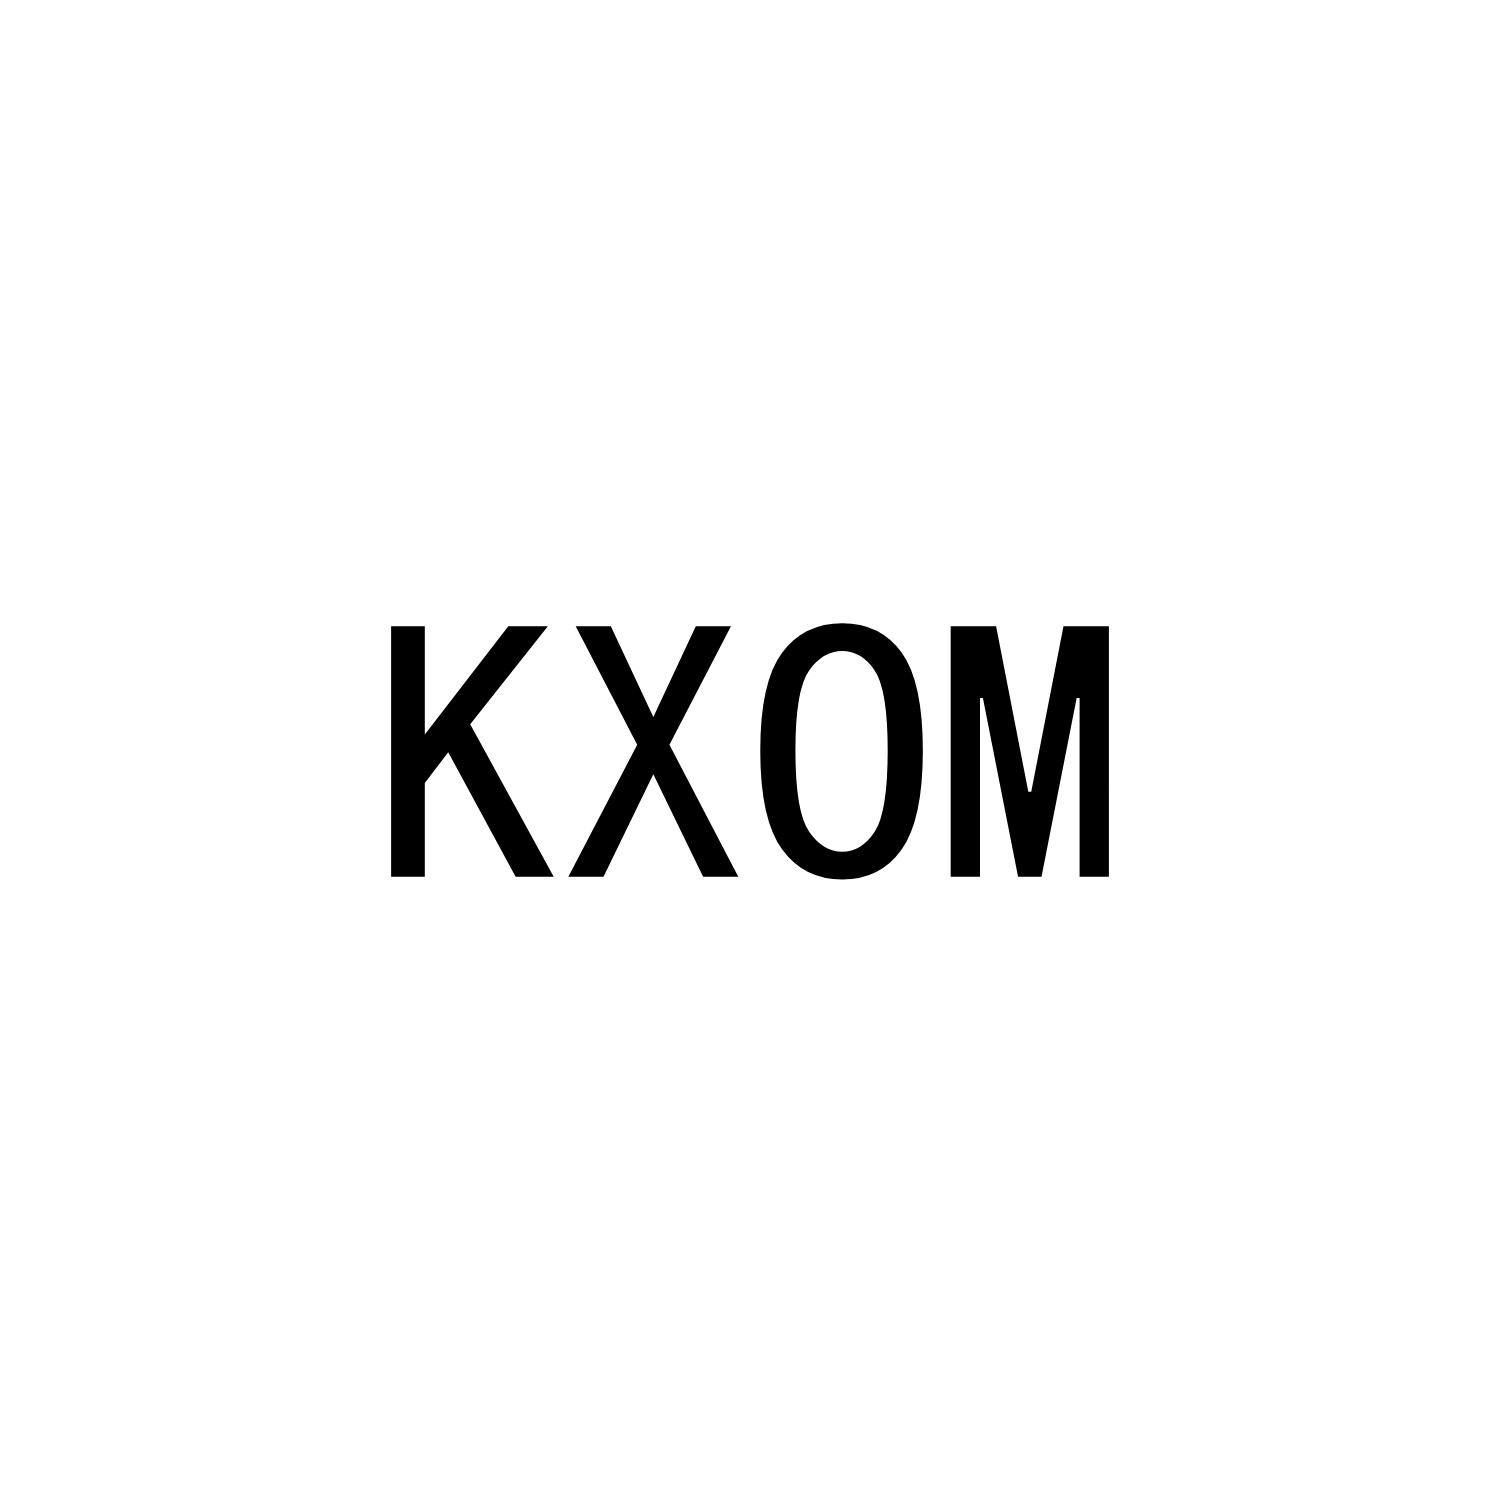 KXOM